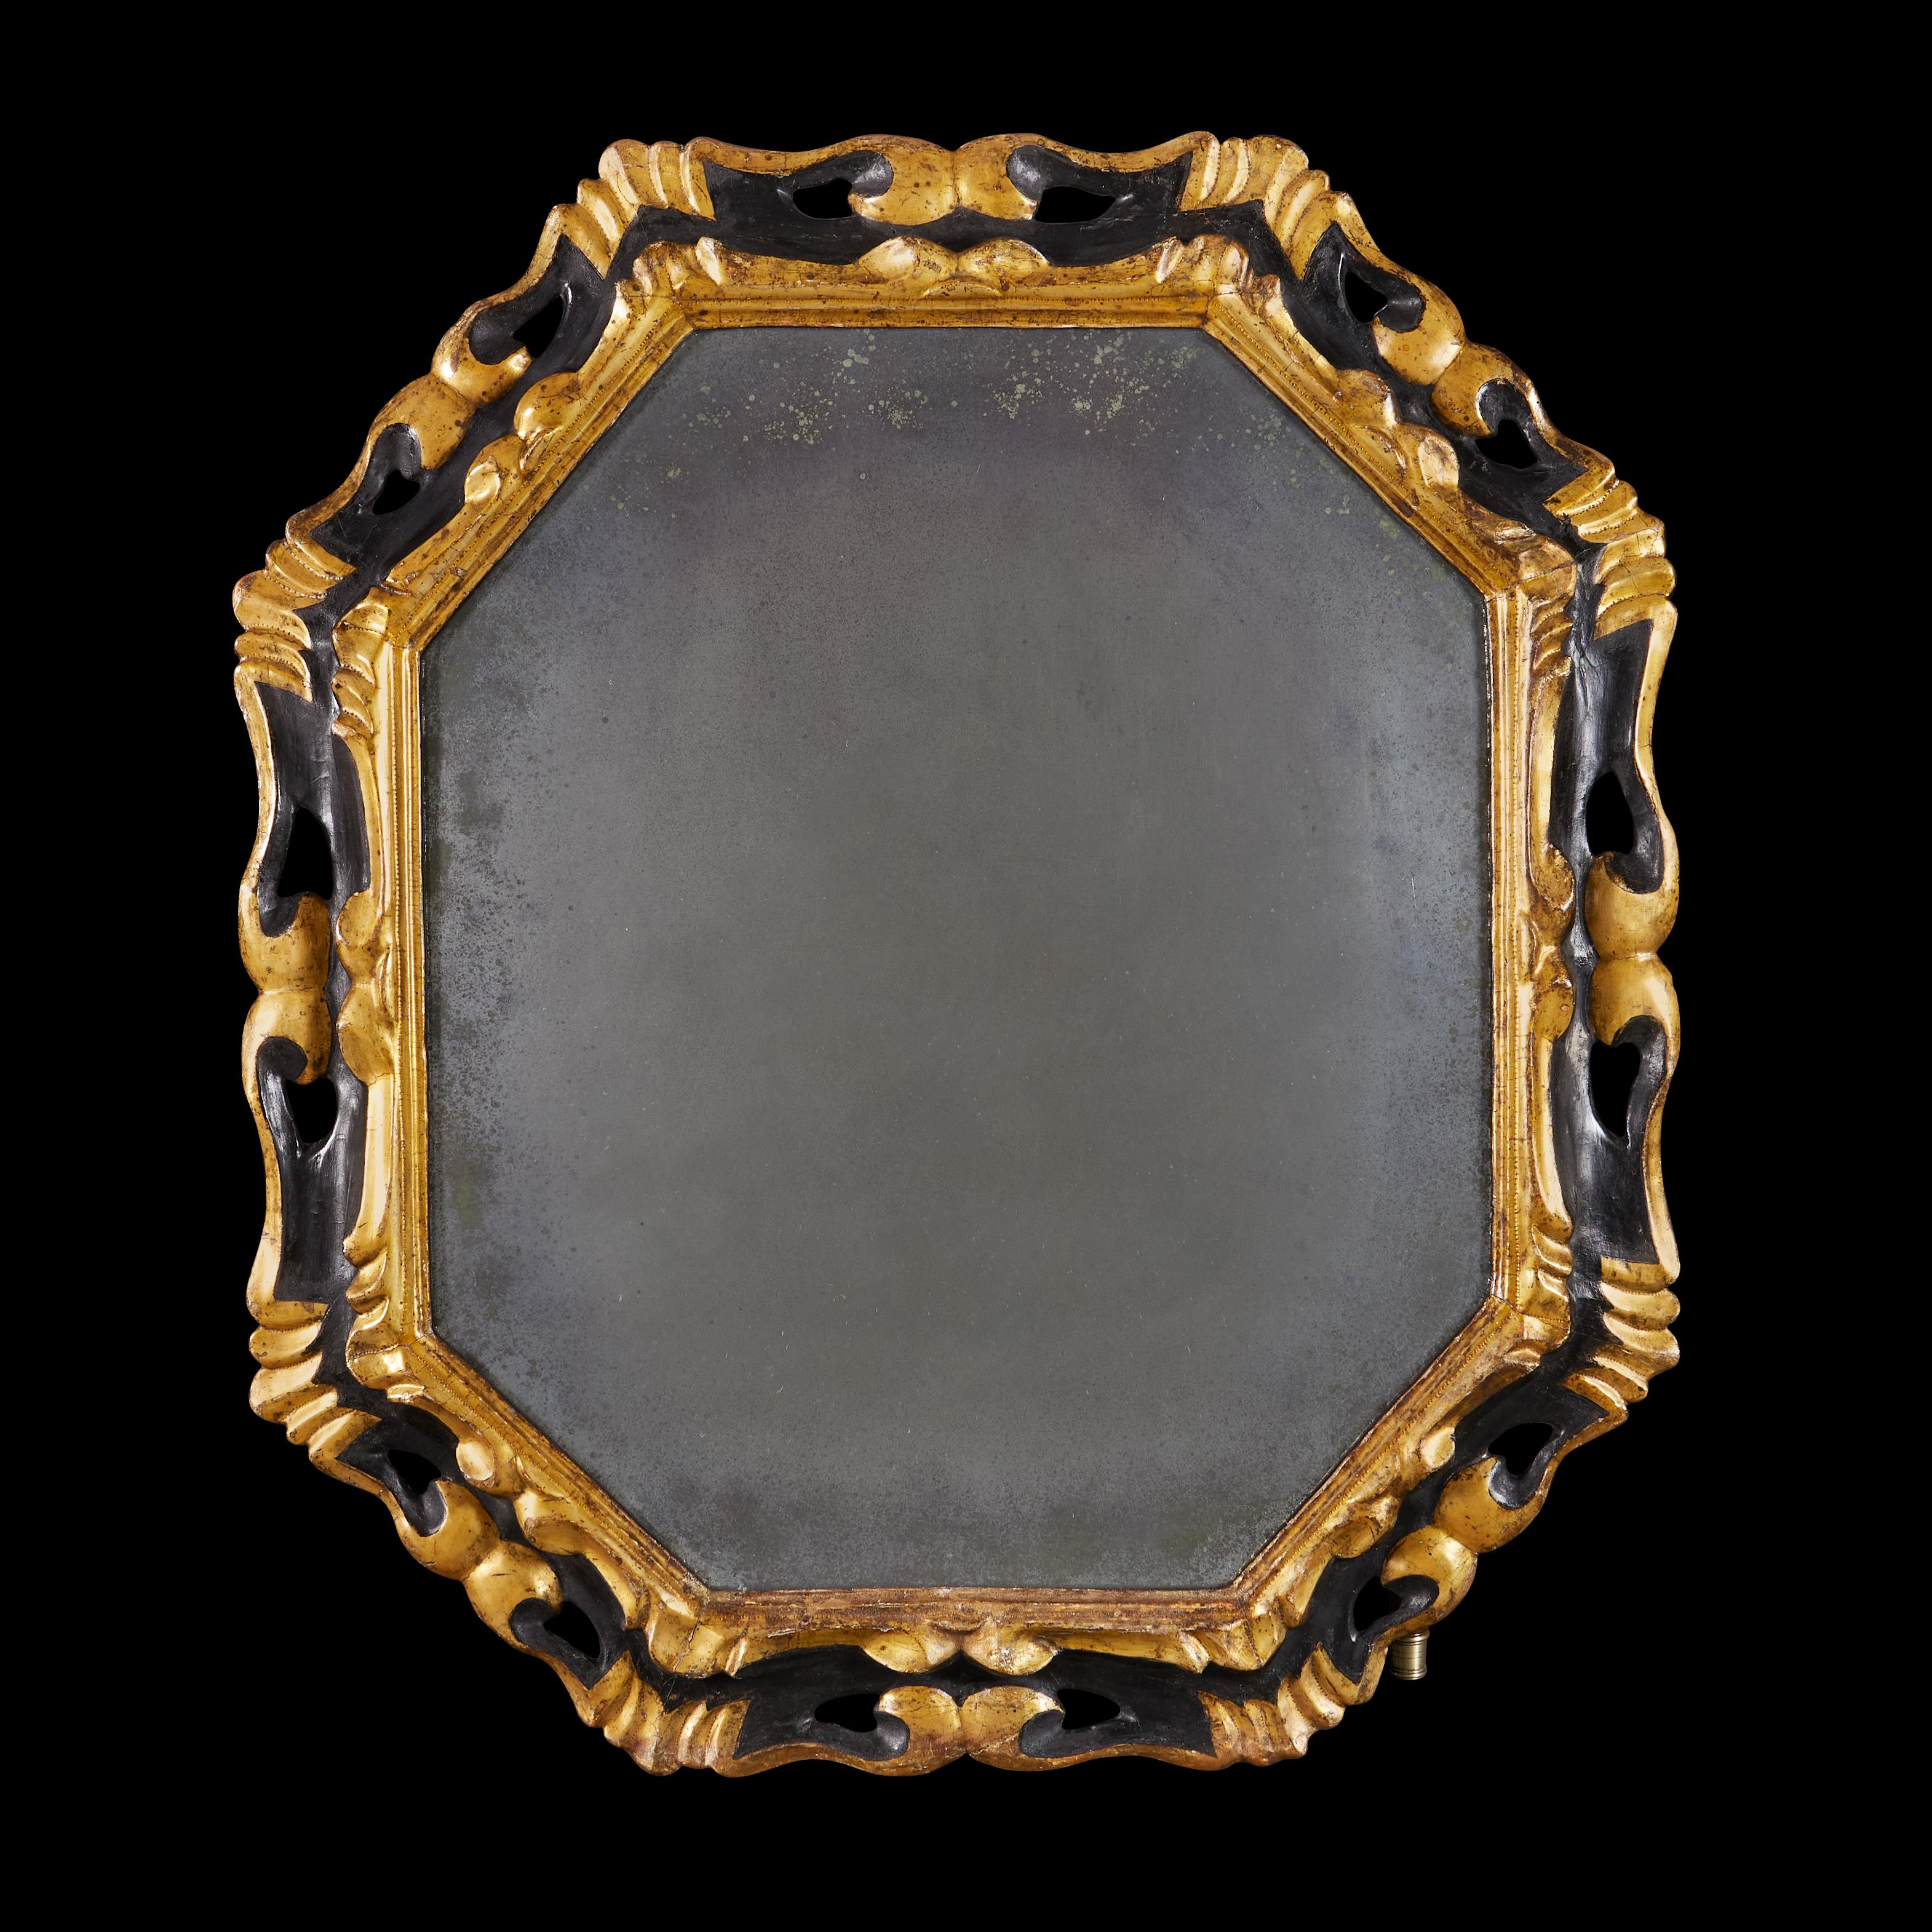 Italien, um 1850

Eine markante Mitte des neunzehnten Jahrhunderts achteckigen Spiegel, mit durchbrochenen Rocaille Grenze, die Oberfläche ebonisiert mit vergoldeten Highlights, unter Beibehaltung der ursprünglichen Quecksilber Spiegelplatte.

Höhe 